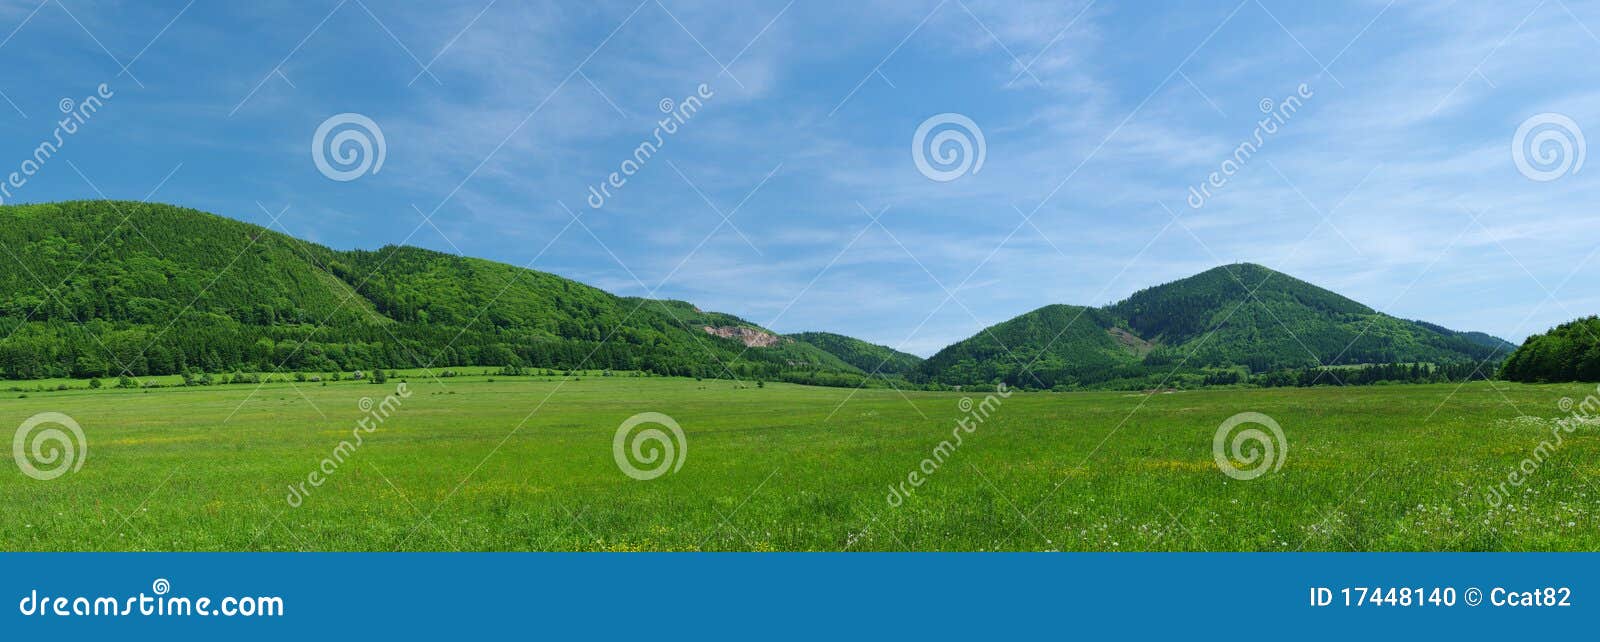 hills panorama